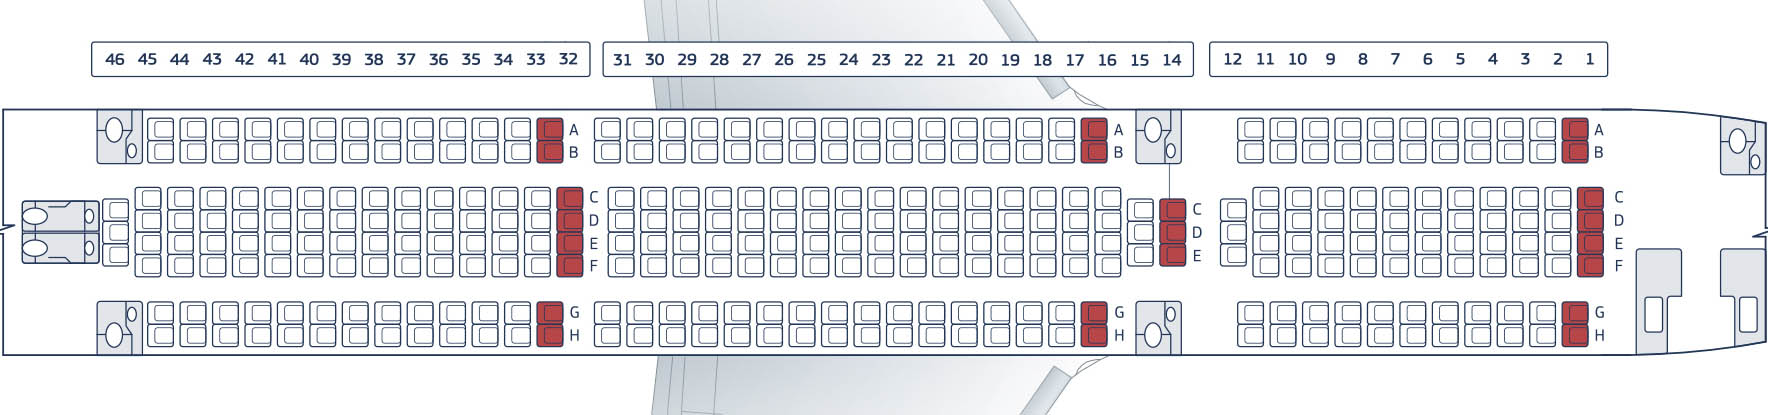 Boeing 767 300 air. Боинг 767-300 расположение мест. Схема самолета Боинг 767-300. Расположение мест в самолете Боинг 767. Боинг-767-300 схема салона.